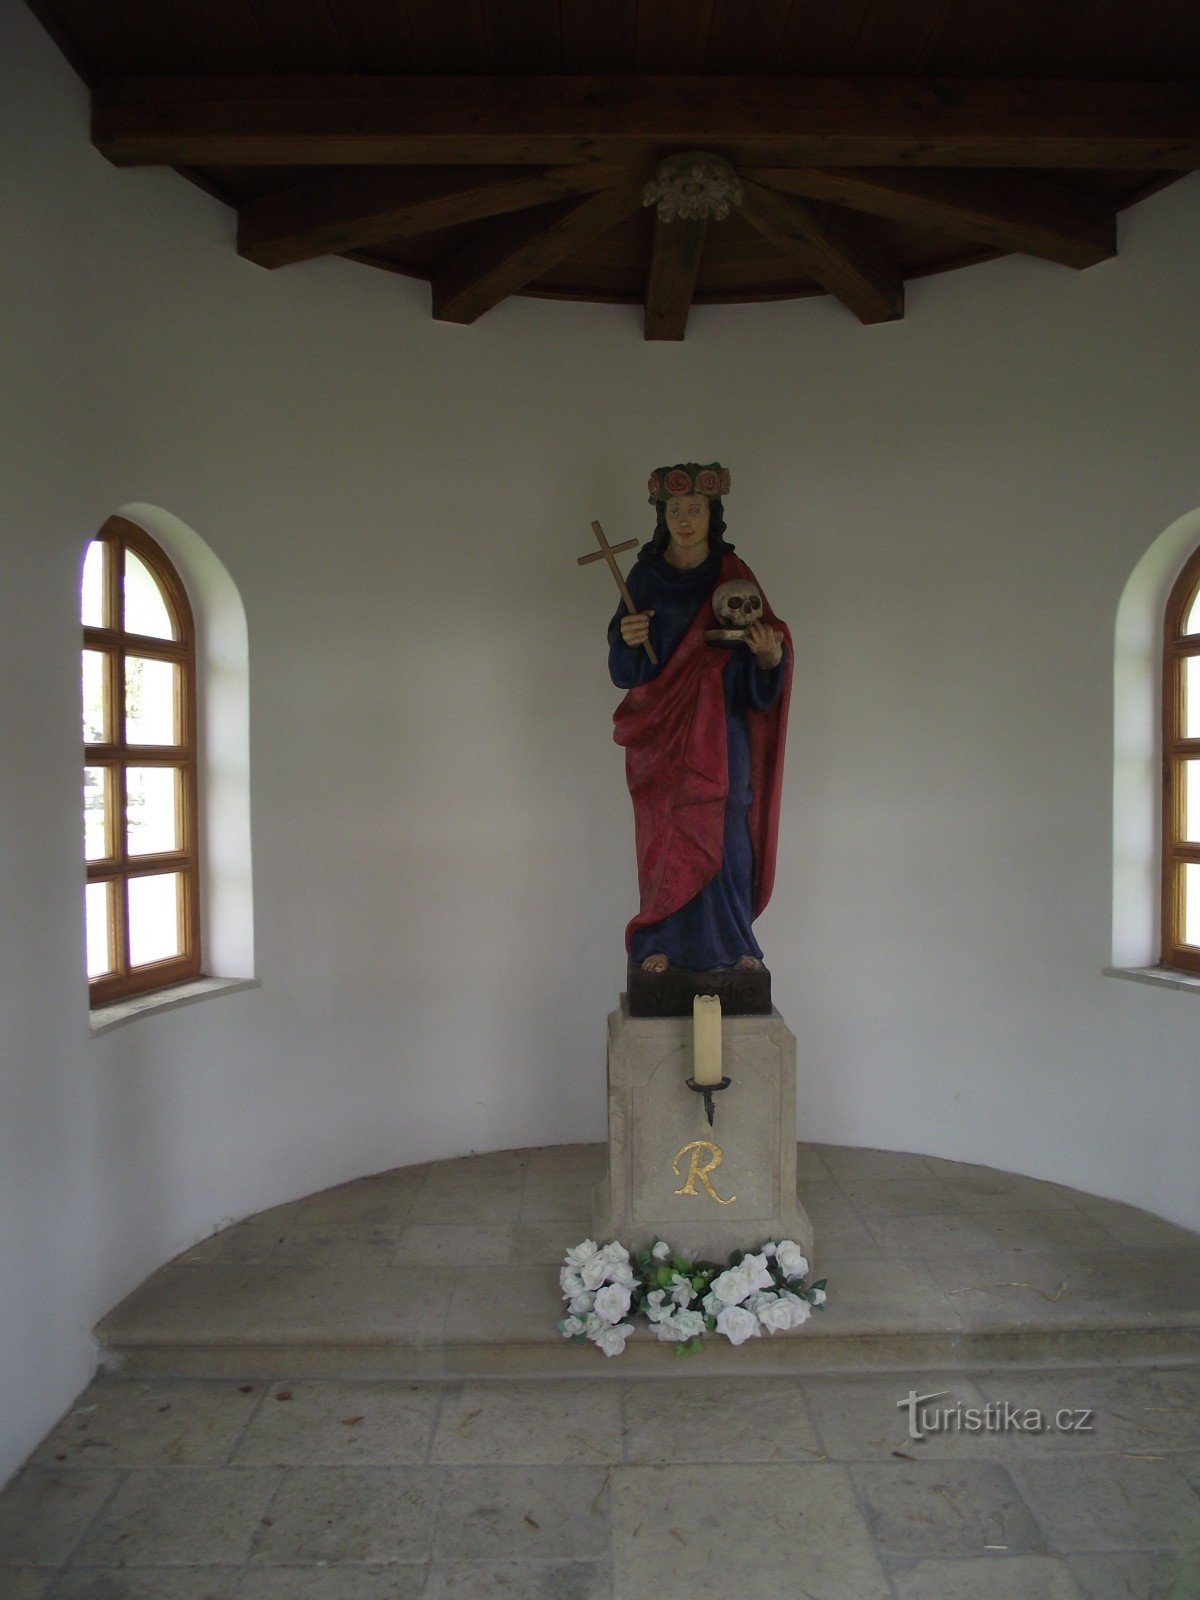 小教堂的内部有圣约翰雕像。 罗莎莉